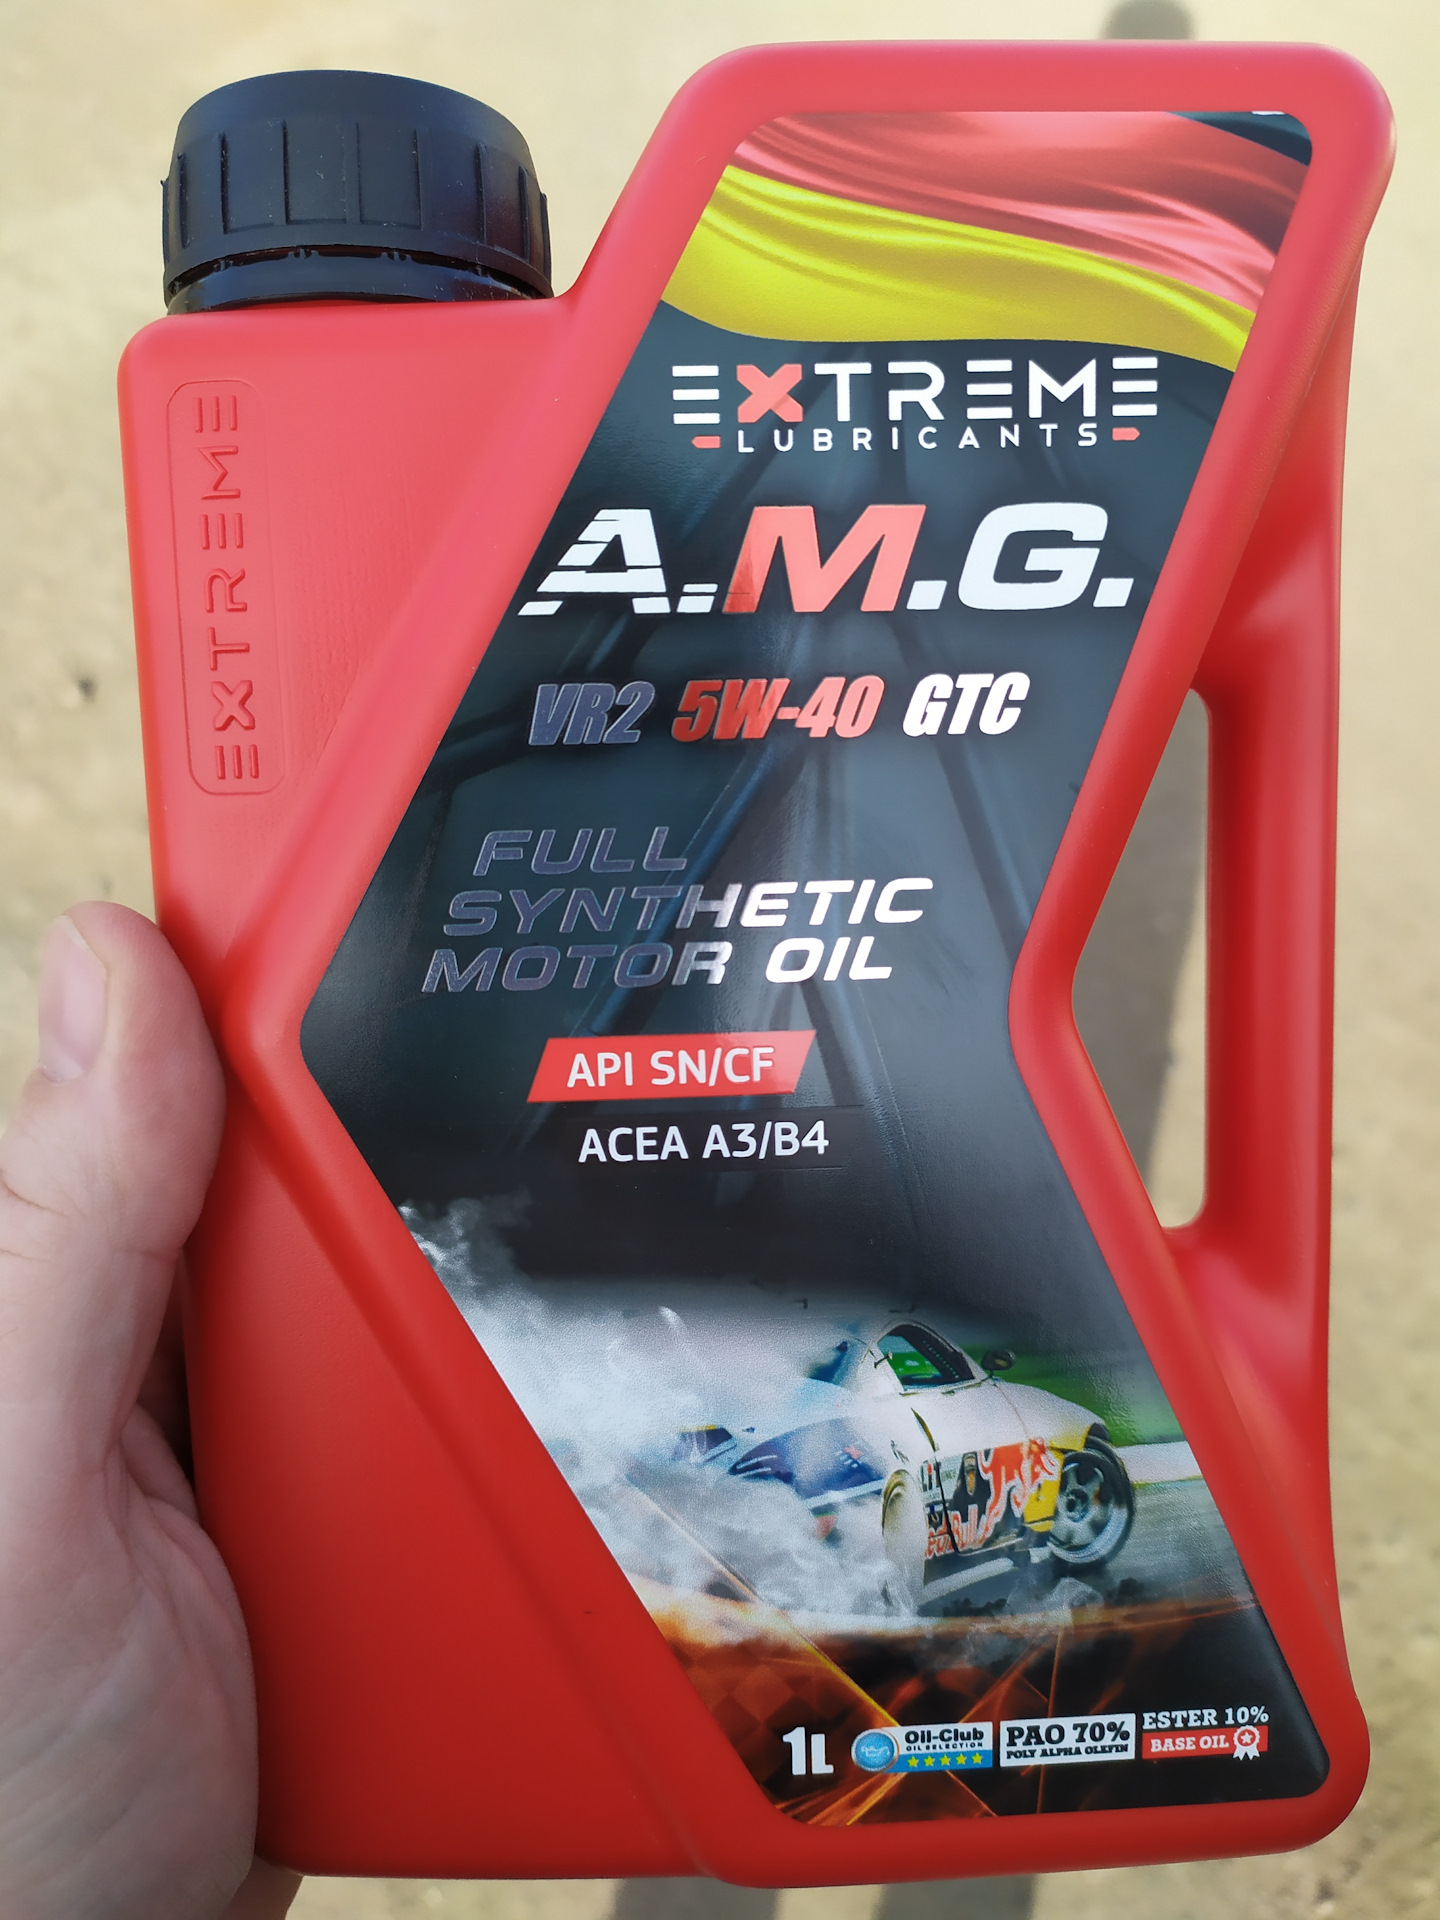 Купить масло 5 20. Extreme AMG 5w40. Масло AMG extreme 5w40. Extreme vr2 5w-40. Extreme AMG vr2 5w-40 GTC.